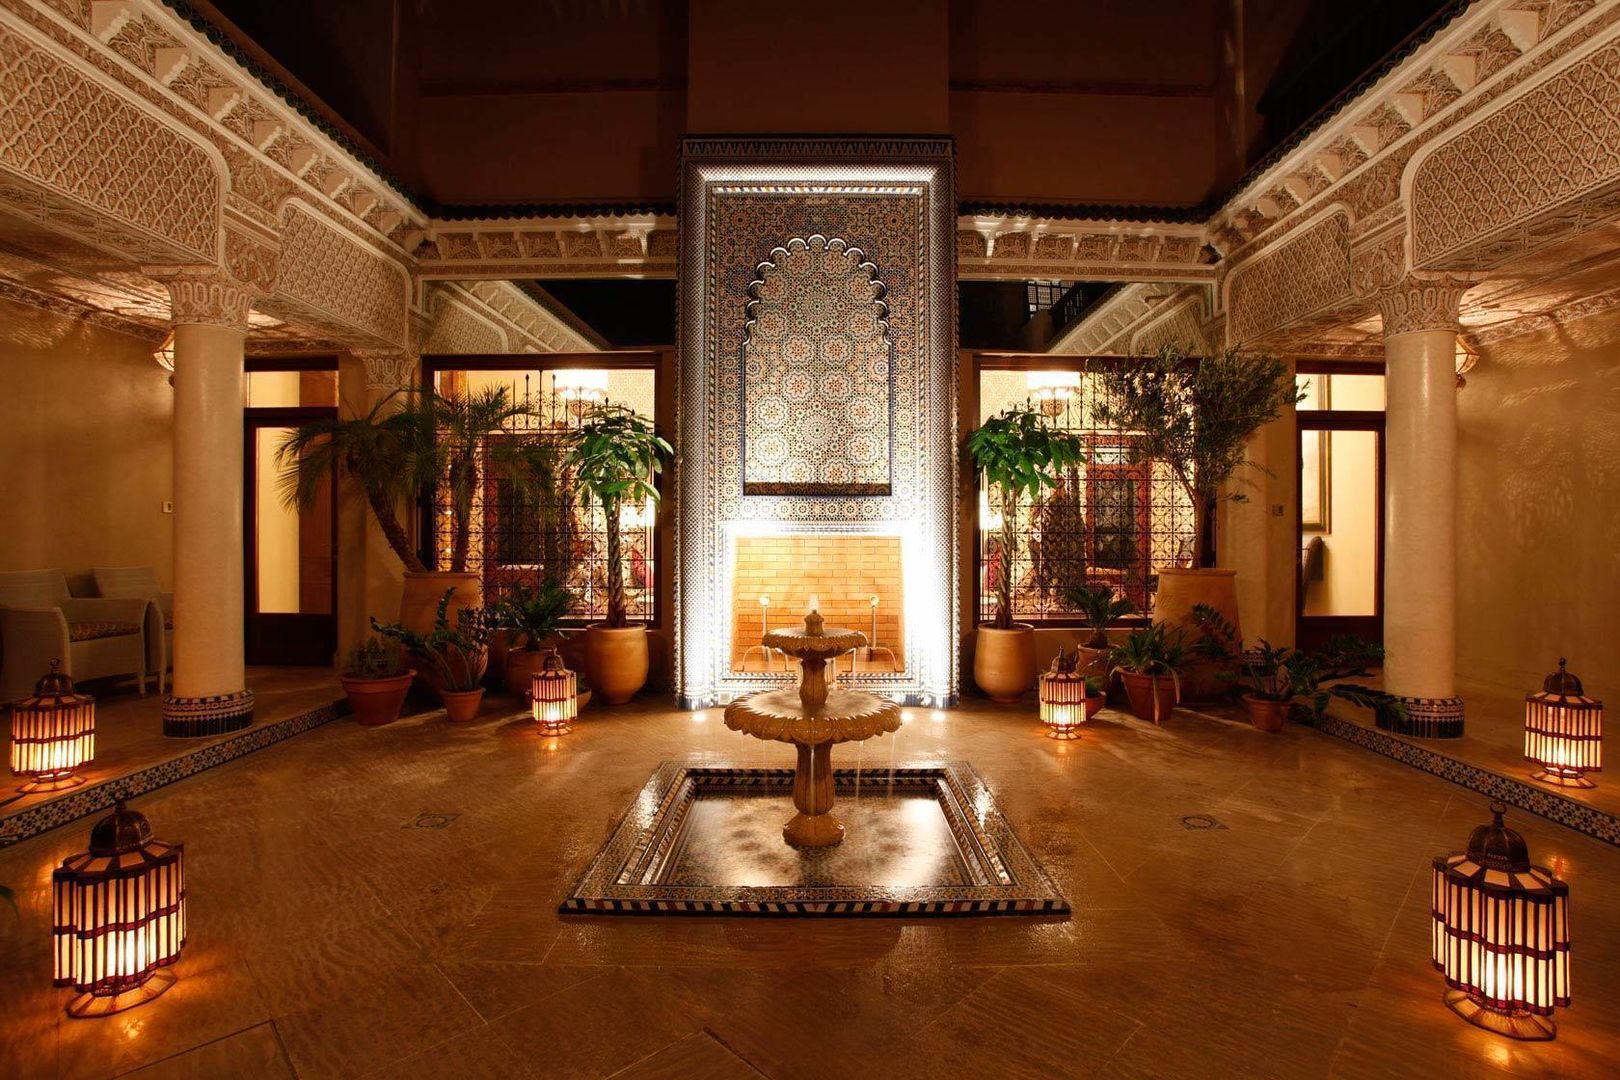 Private Villa, Morocco, Moroccan Bazaar Moroccan Bazaar Paredes y pisos de estilo mediterráneo Revestimientos de paredes y pisos